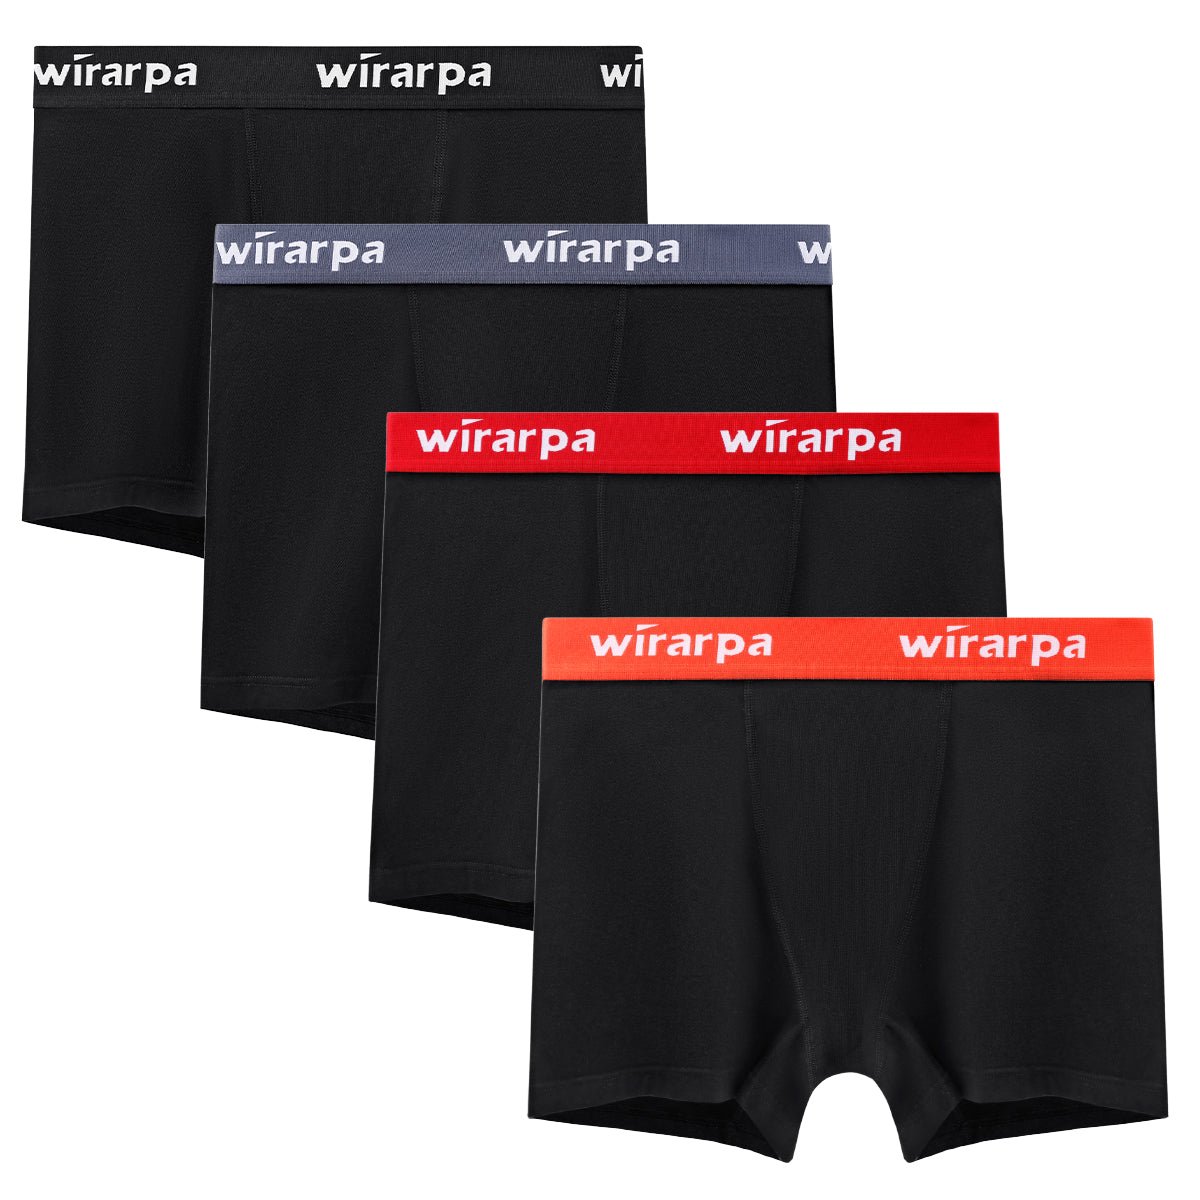 wirarpa Women's Boxer Briefs Cotton Underwear Anti Chafing Boy Shorts  Panties 5.